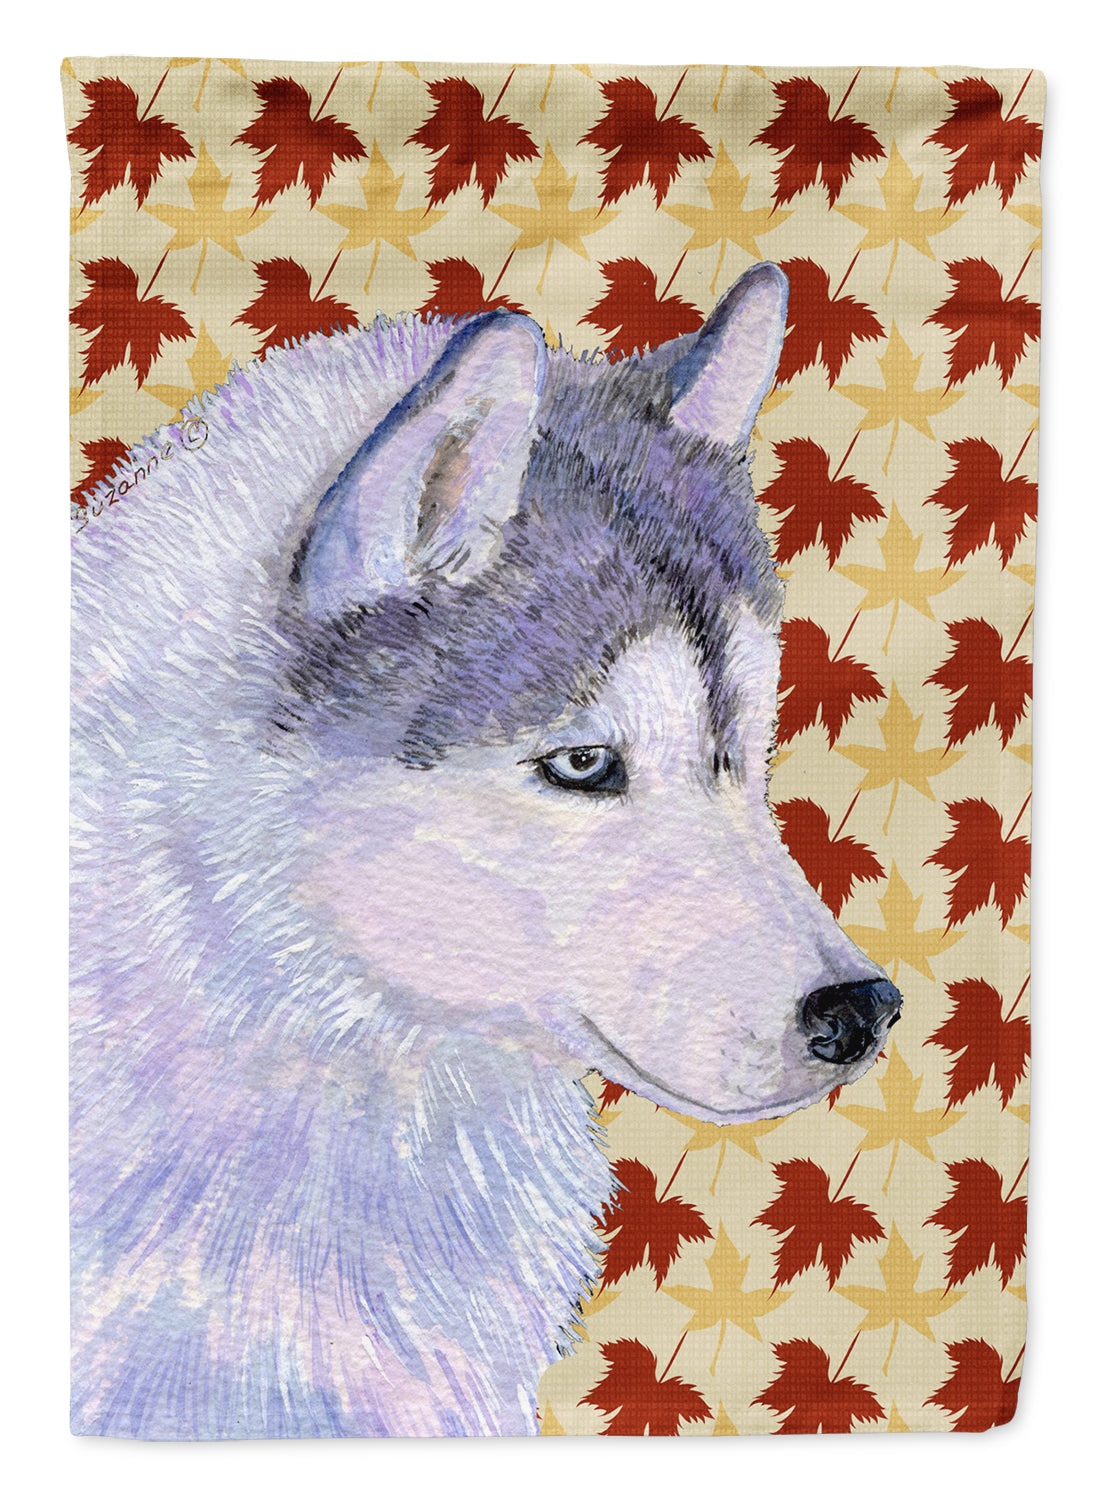 Siberian Husky Fall Leaves Portrait Flag Garden Size